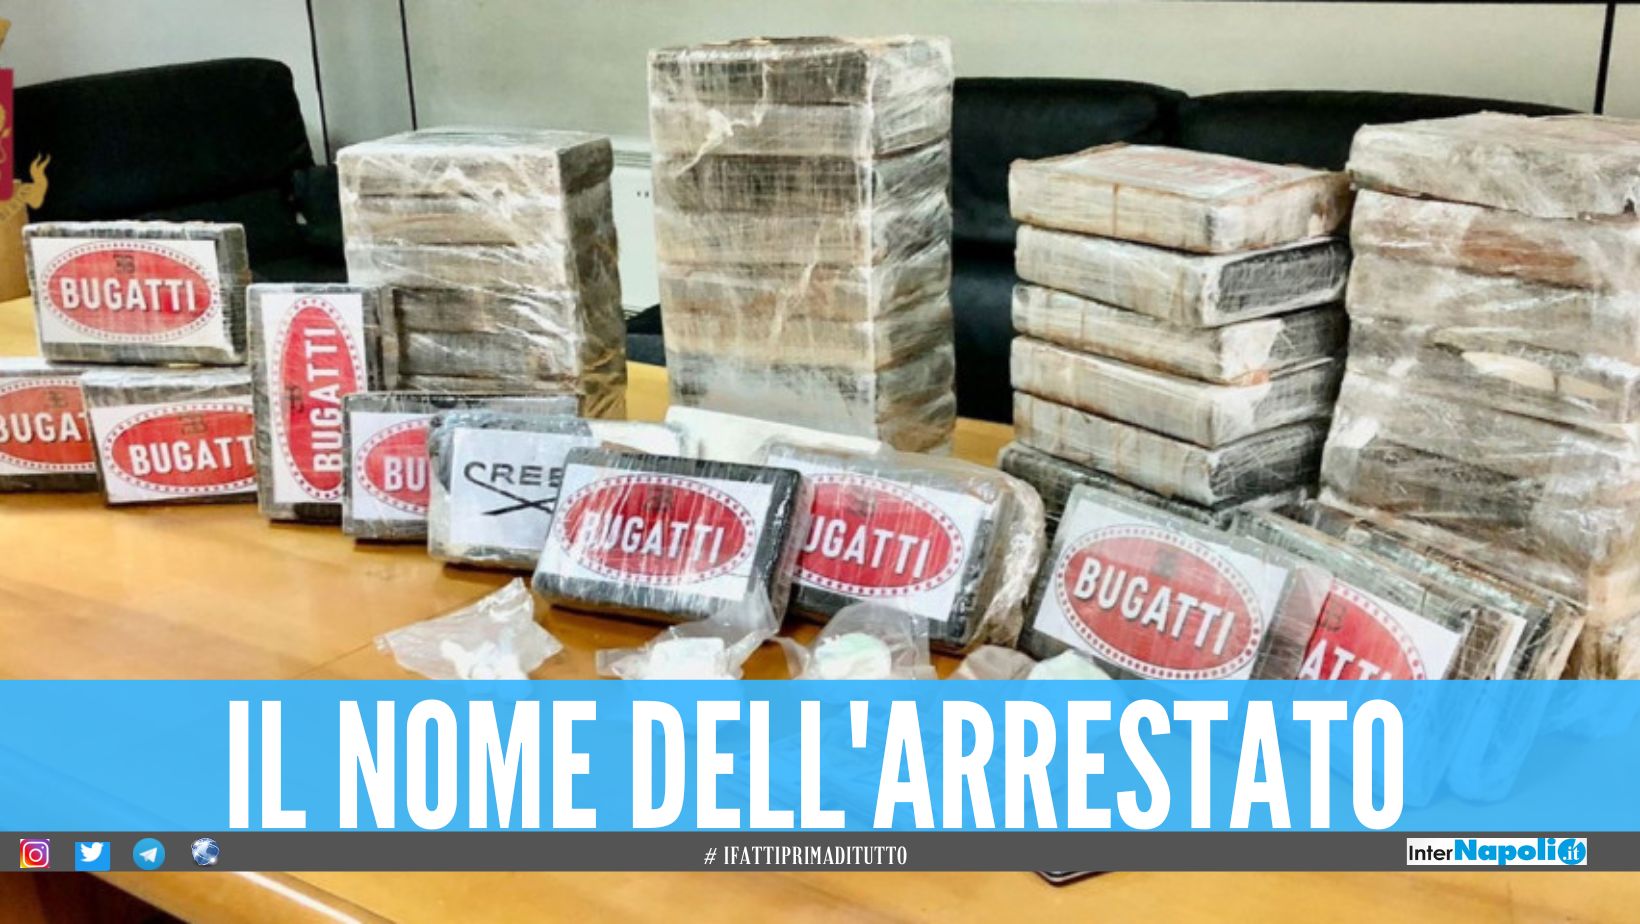 Nascondeva in casa 50 kg di cocaina 'Bugatti', scatta l'arresto a Casoria